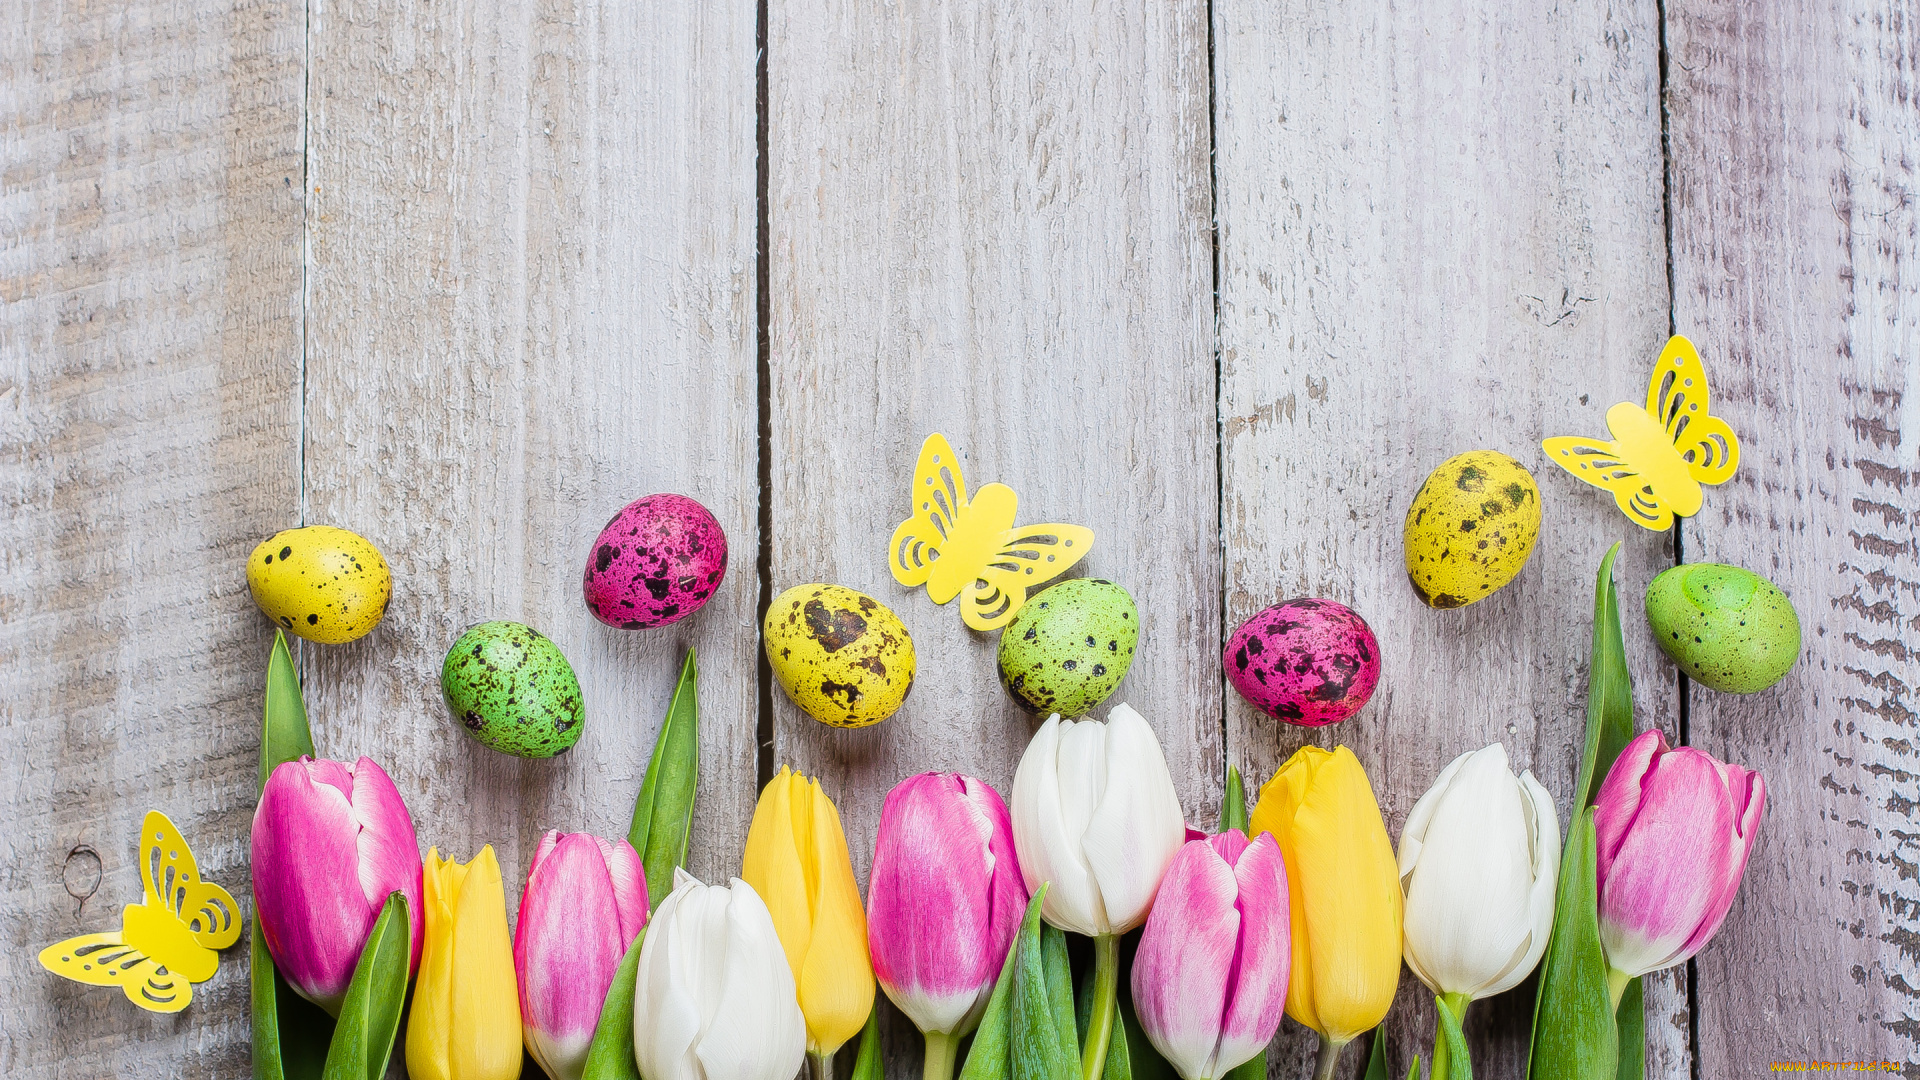 праздничные, пасха, цветы, яйца, colorful, тюльпаны, happy, pink, flowers, tulips, easter, eggs